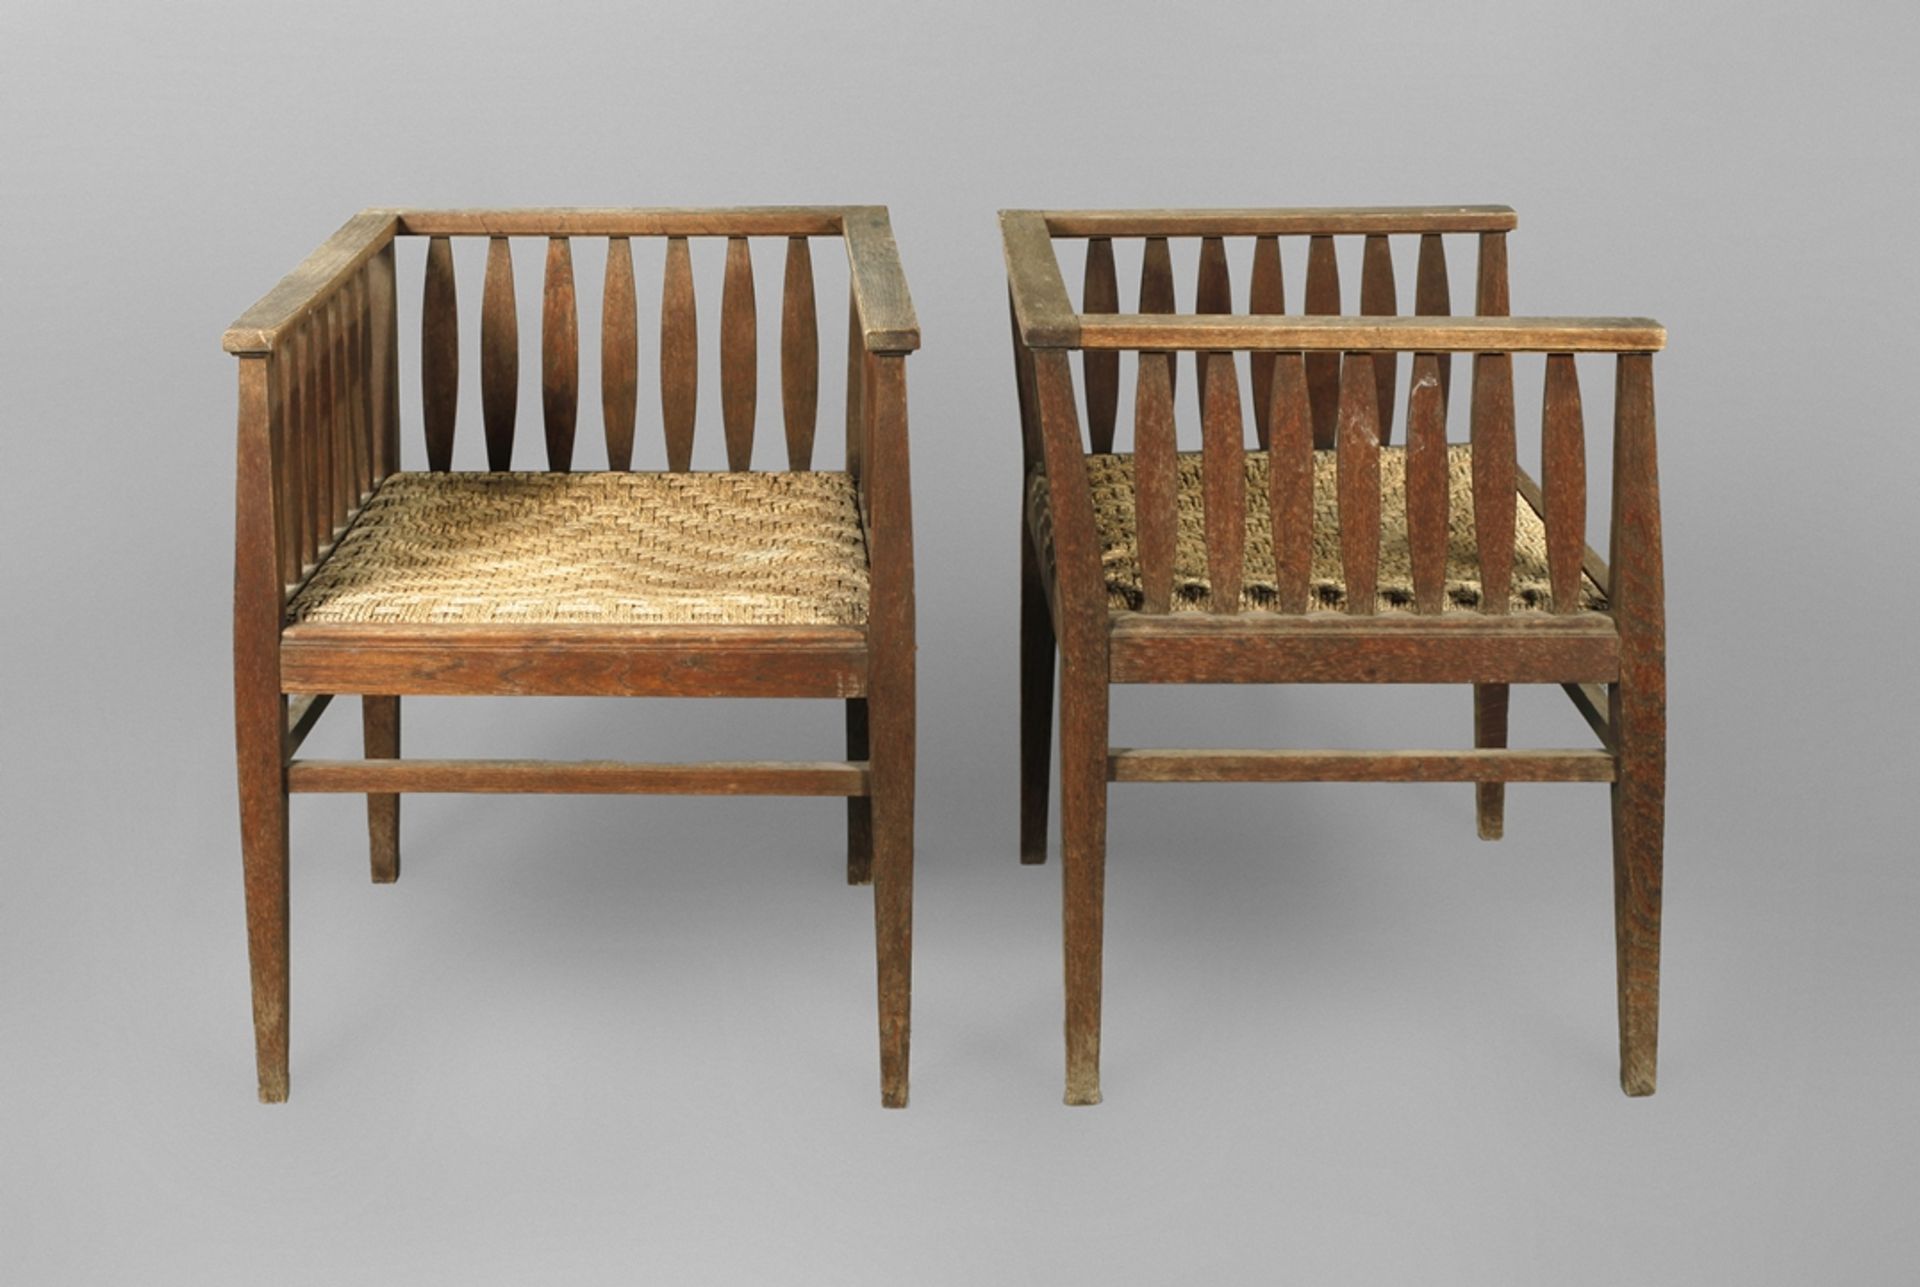 Two Art Nouveau armchairs